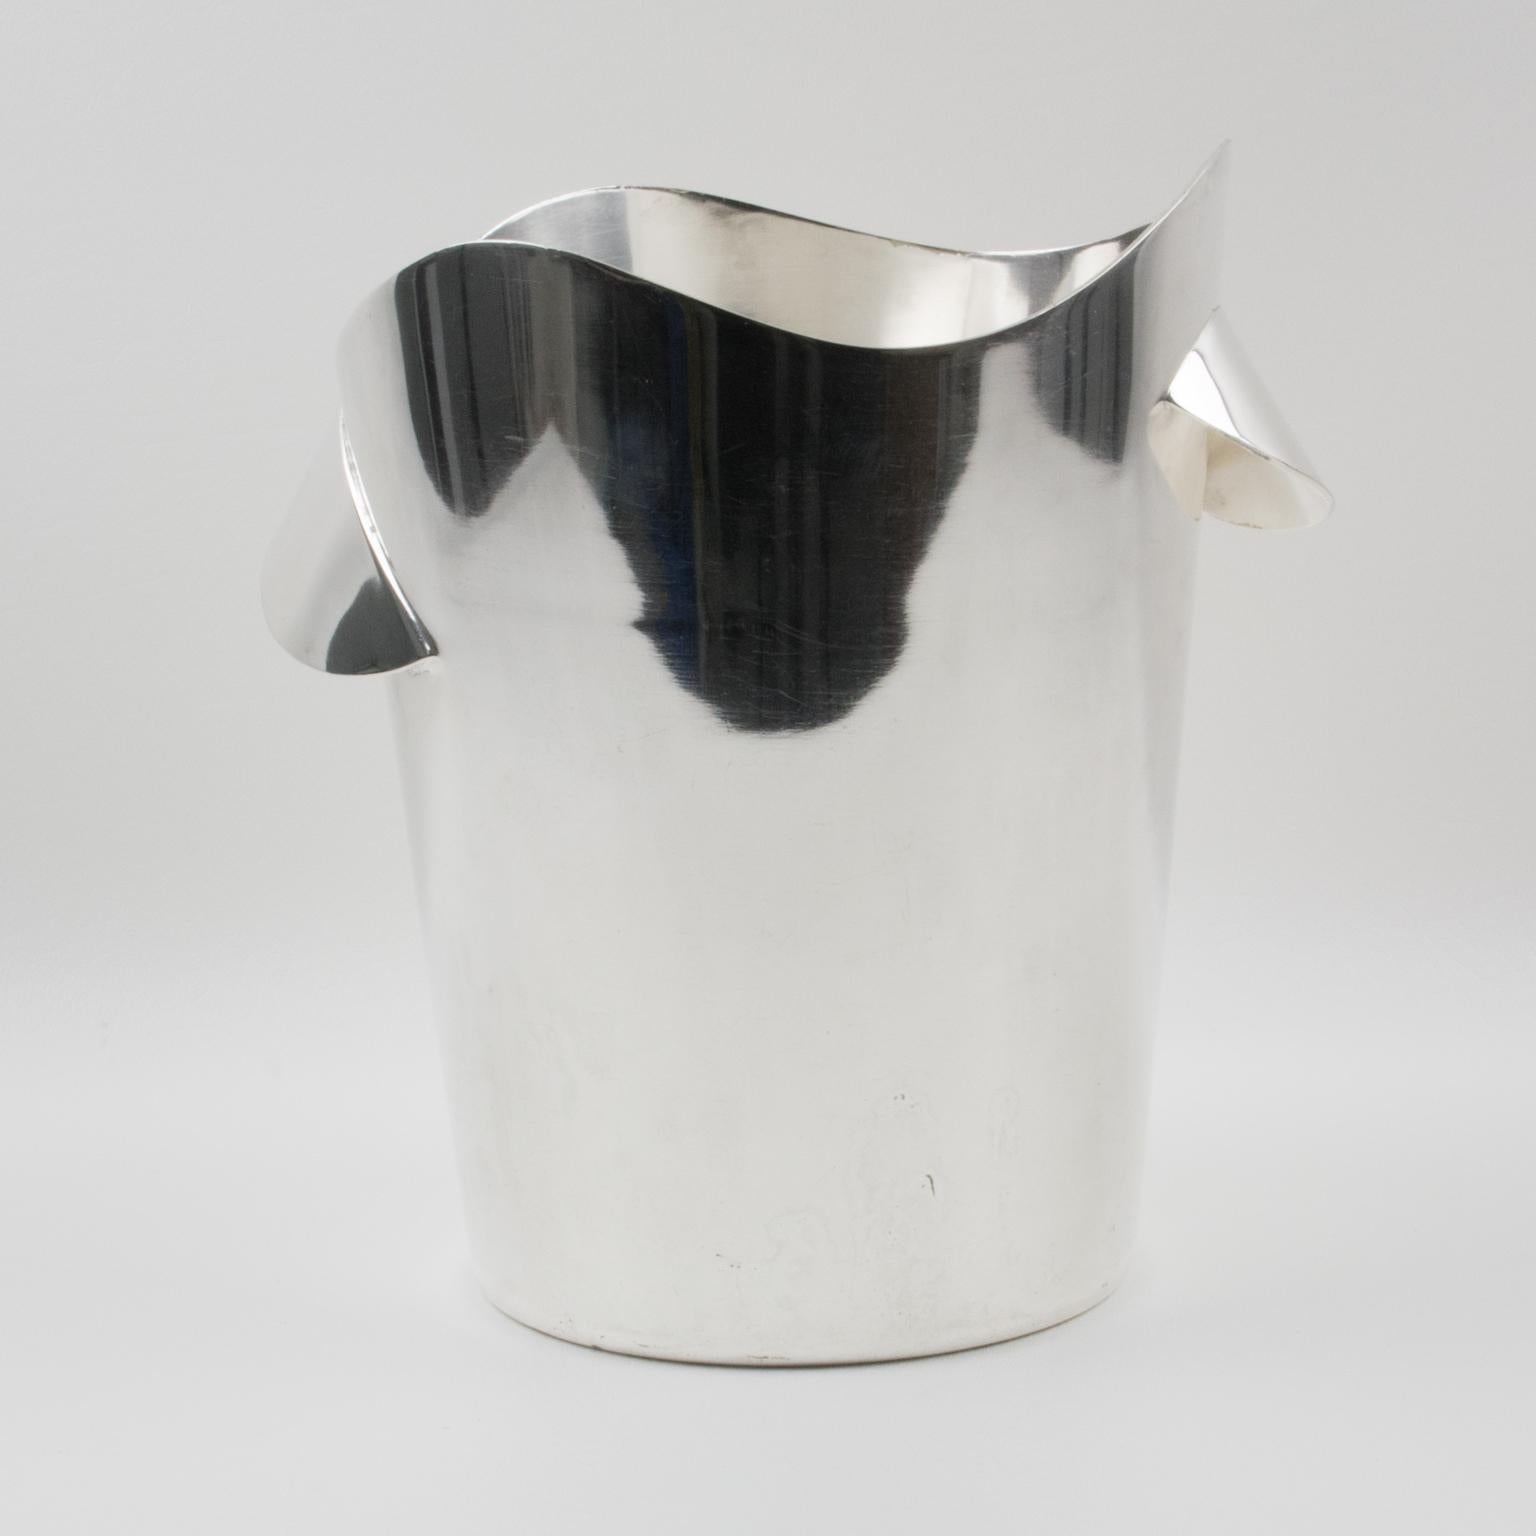 Ce seau à glace ou refroidisseur moderniste en métal argenté de Wiskemann est une pièce exquise de l'art du bar du milieu du siècle dernier. Fabriqué par l'orfèvre Wiskemann, en Belgique, son design élégant présente une structure trapézoïdale et une